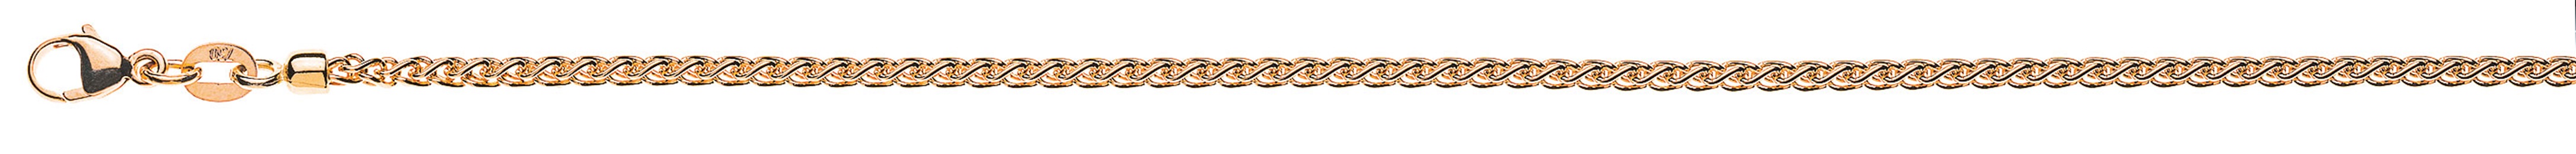 AURONOS Prestige Necklace rose gold 18K cable chain 45cm 2.15mm